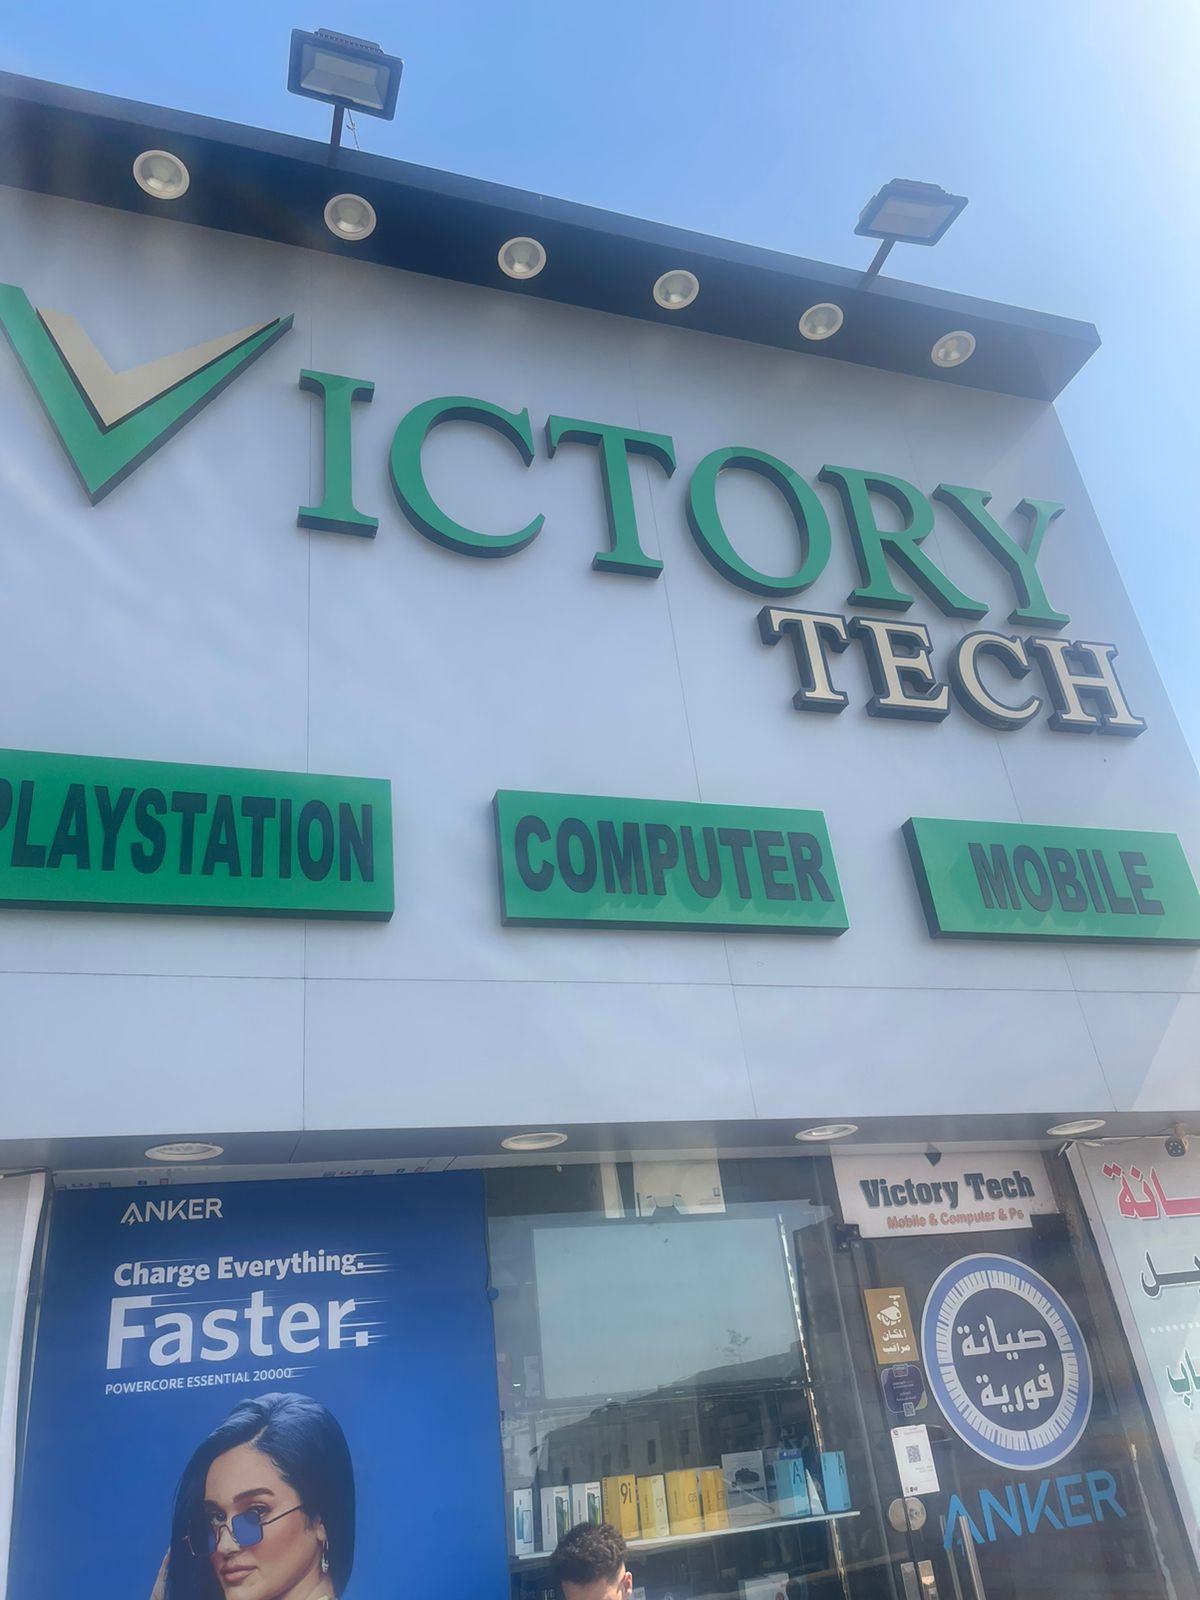 Victory tech